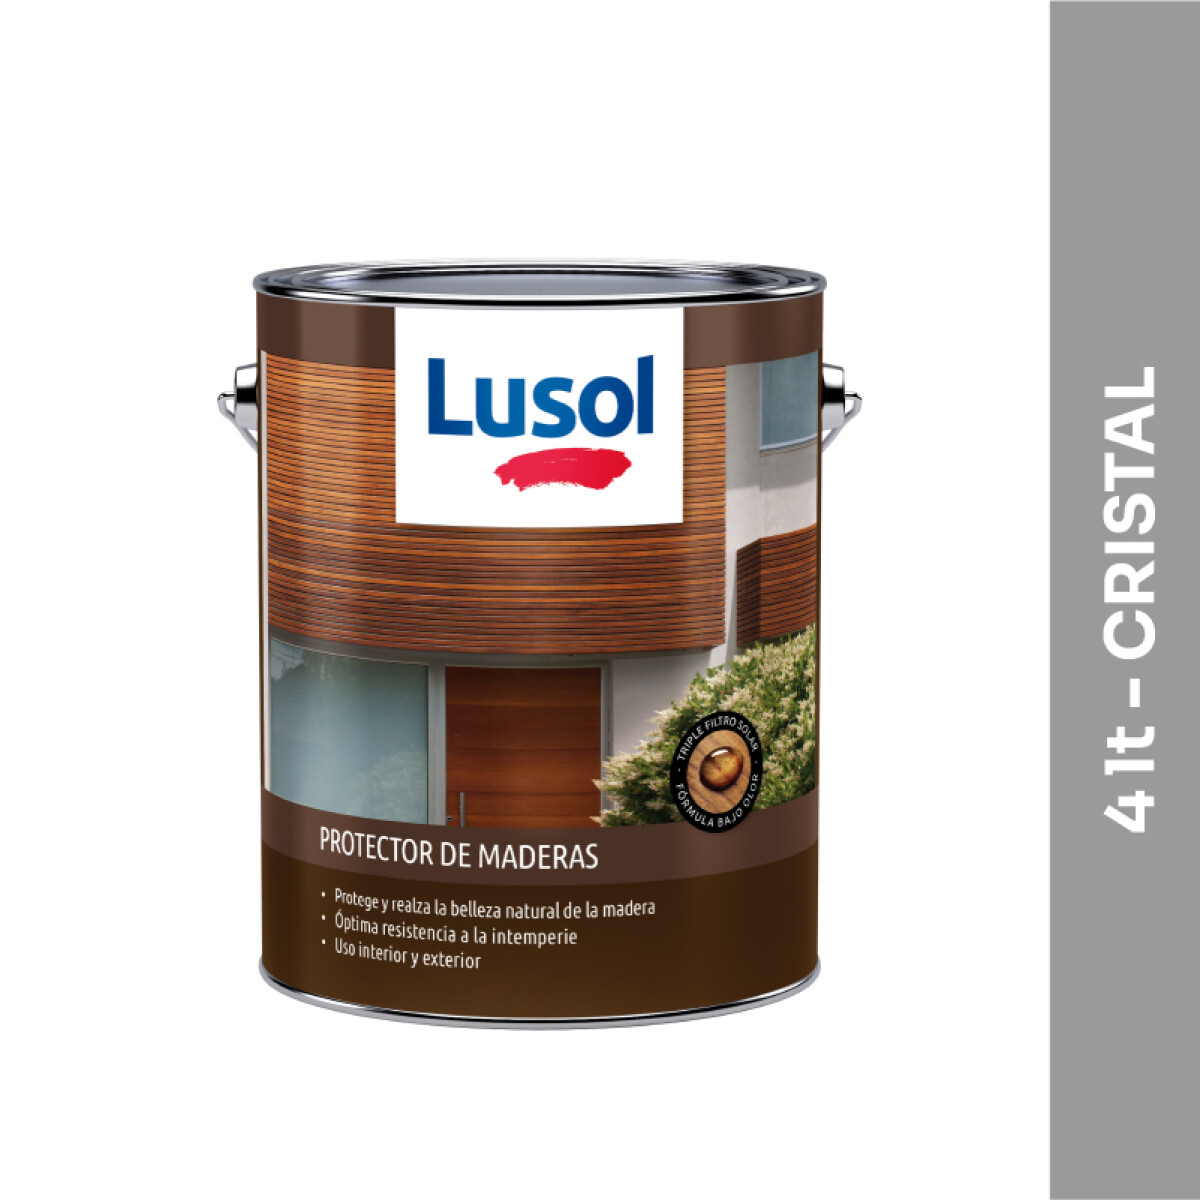 Protector de maderas Lusol - 4 lt - Cristal 